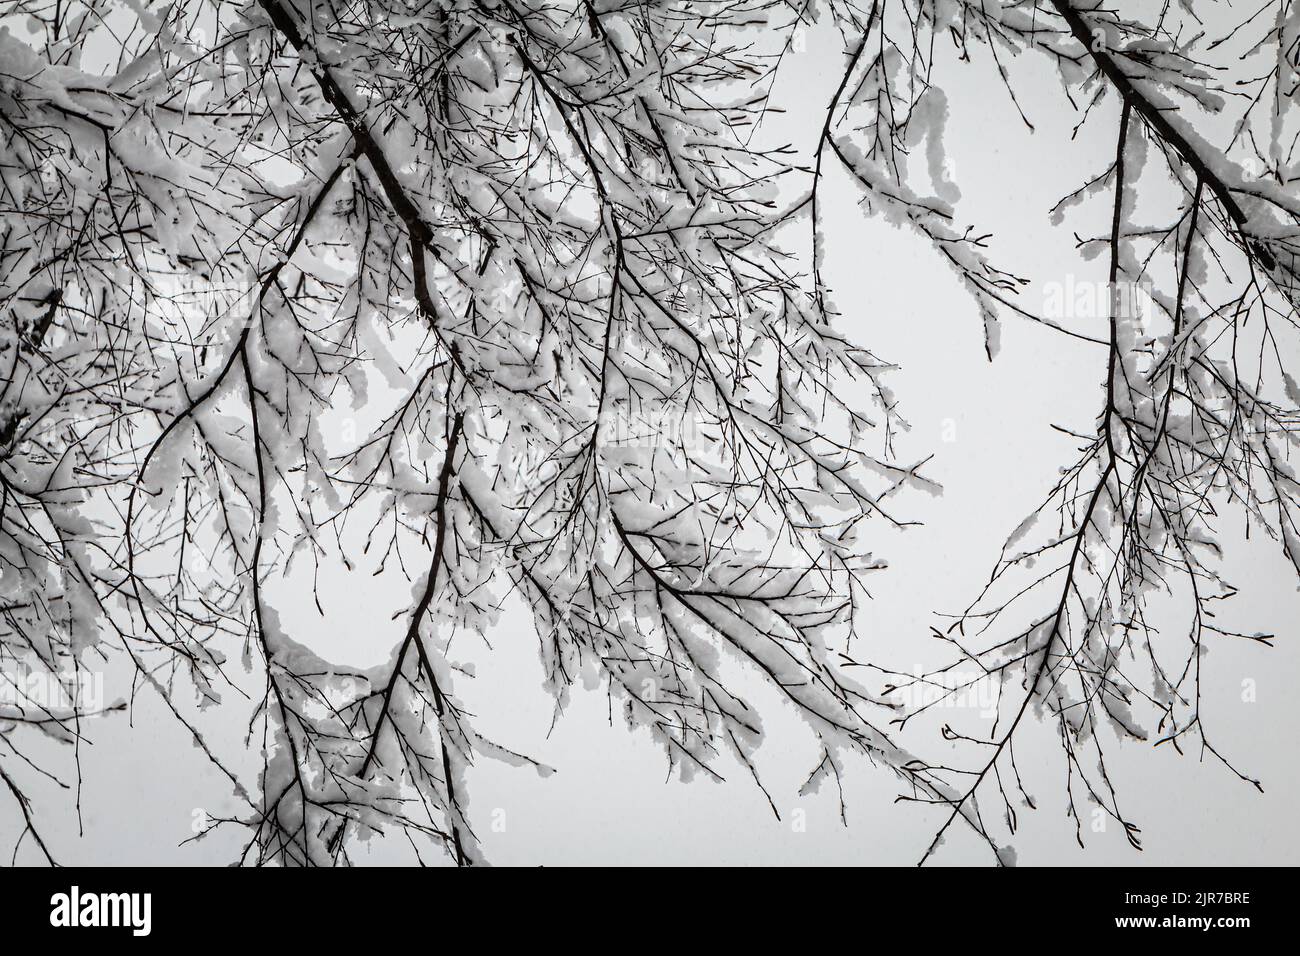 La nieve fresca se aferra a los miembros delgados de los árboles en la rara tormenta de nieve del metro de Atlanta. Foto de stock